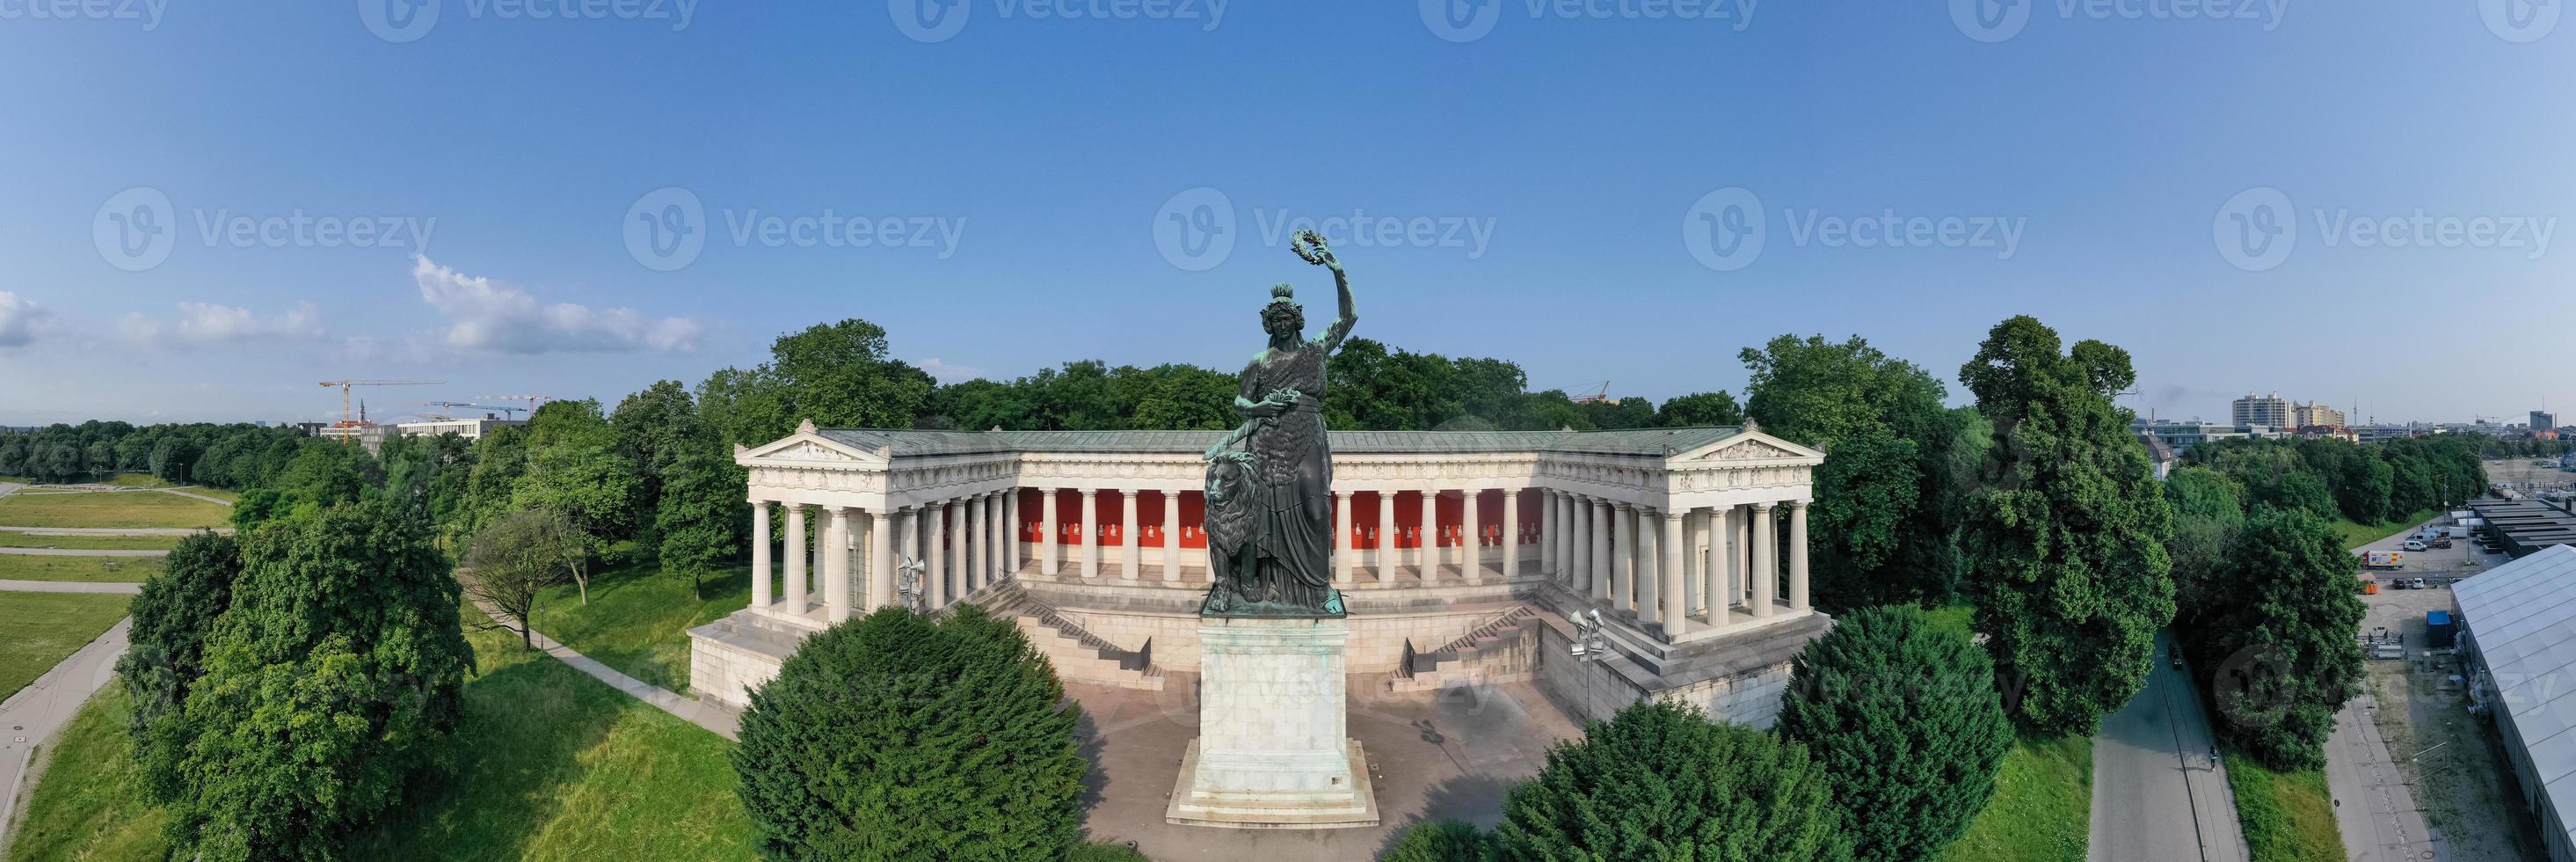 Beieren standbeeld en ruhmeshalle hal van roem in München, duitsland, theresienwiese. de standbeeld was gebouwd in 1850. foto